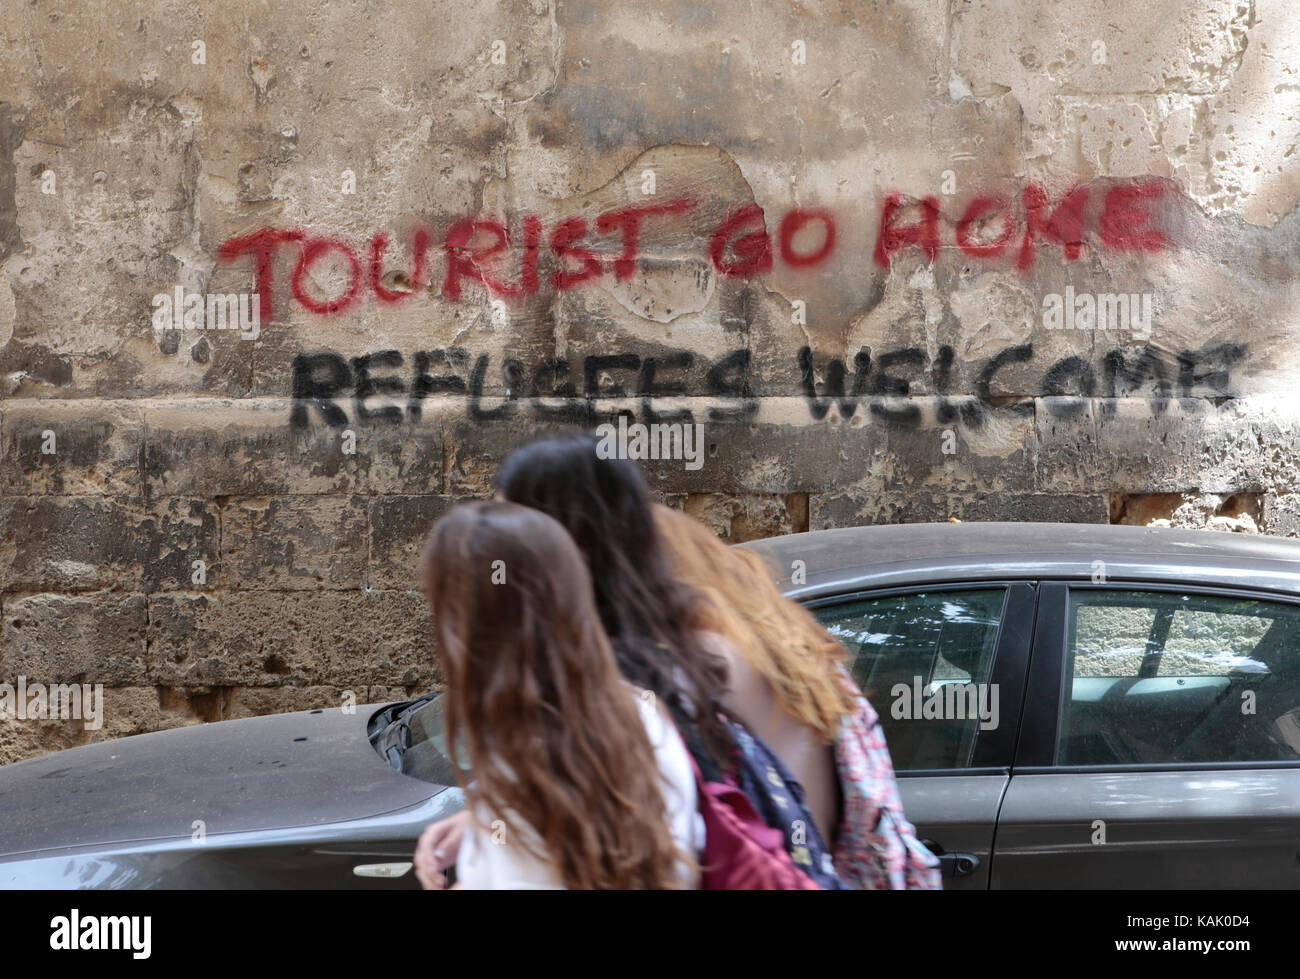 Peintures murales à lire 'touristes' go home et inférieure en catalan "abolition location vacances logement' sont représentés dans une rue du centre Le centre-ville de Palma Banque D'Images